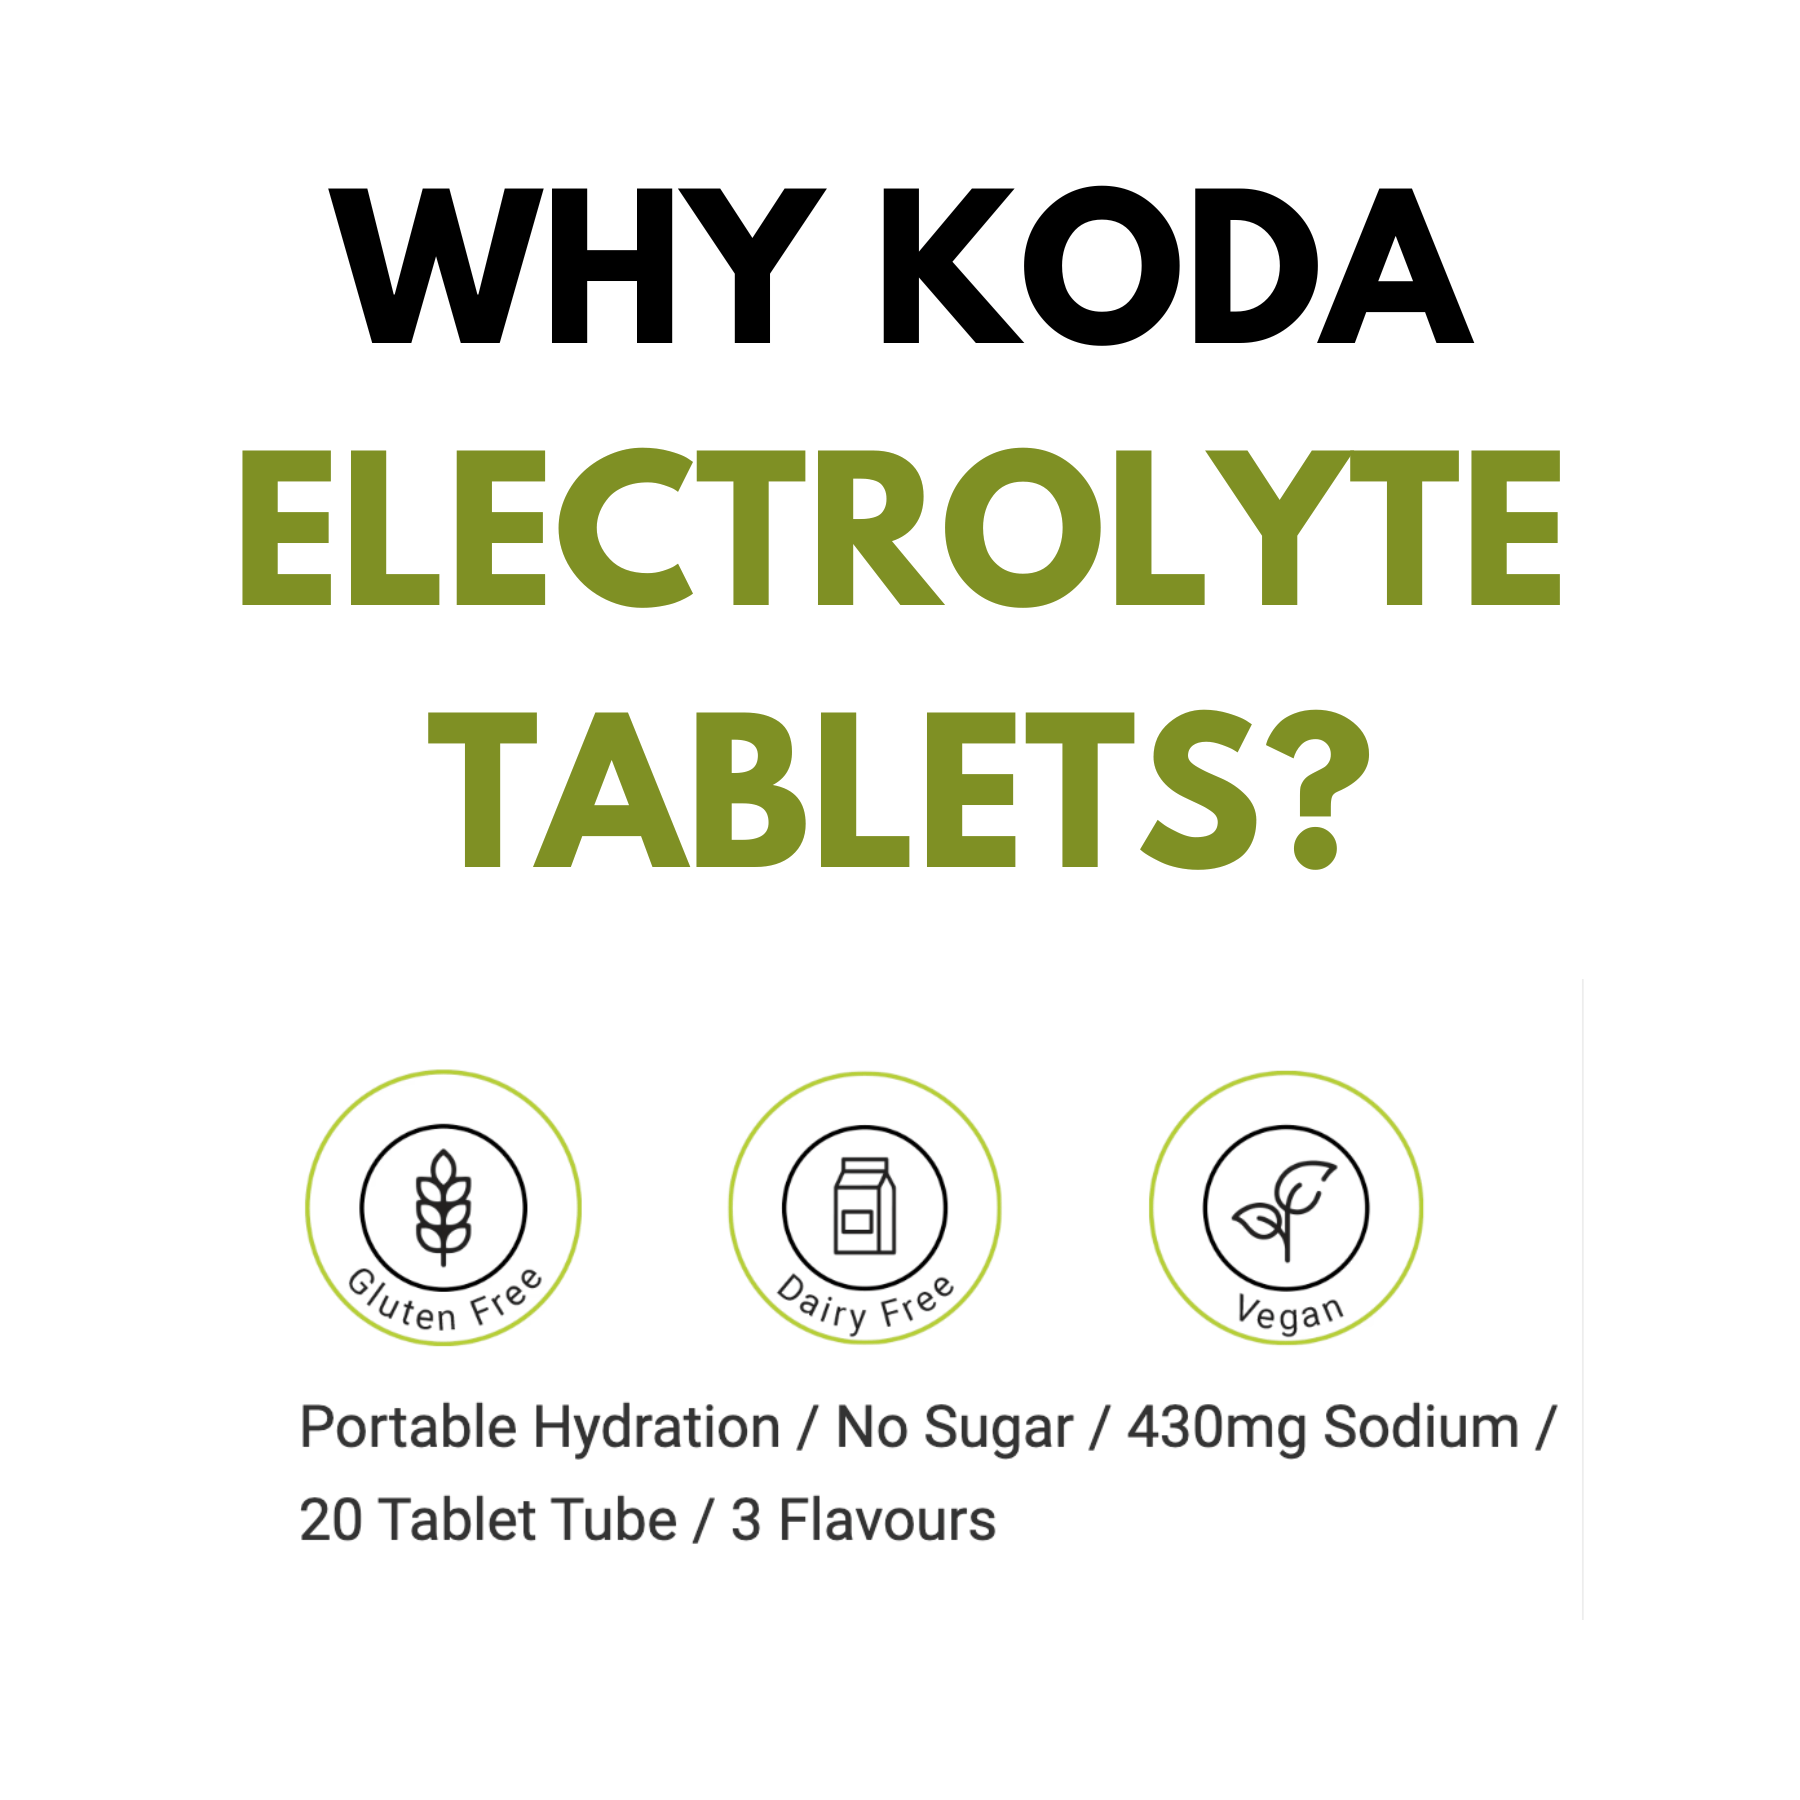 Koda Electrolyte Tablets Koda Electrolyte Tablets